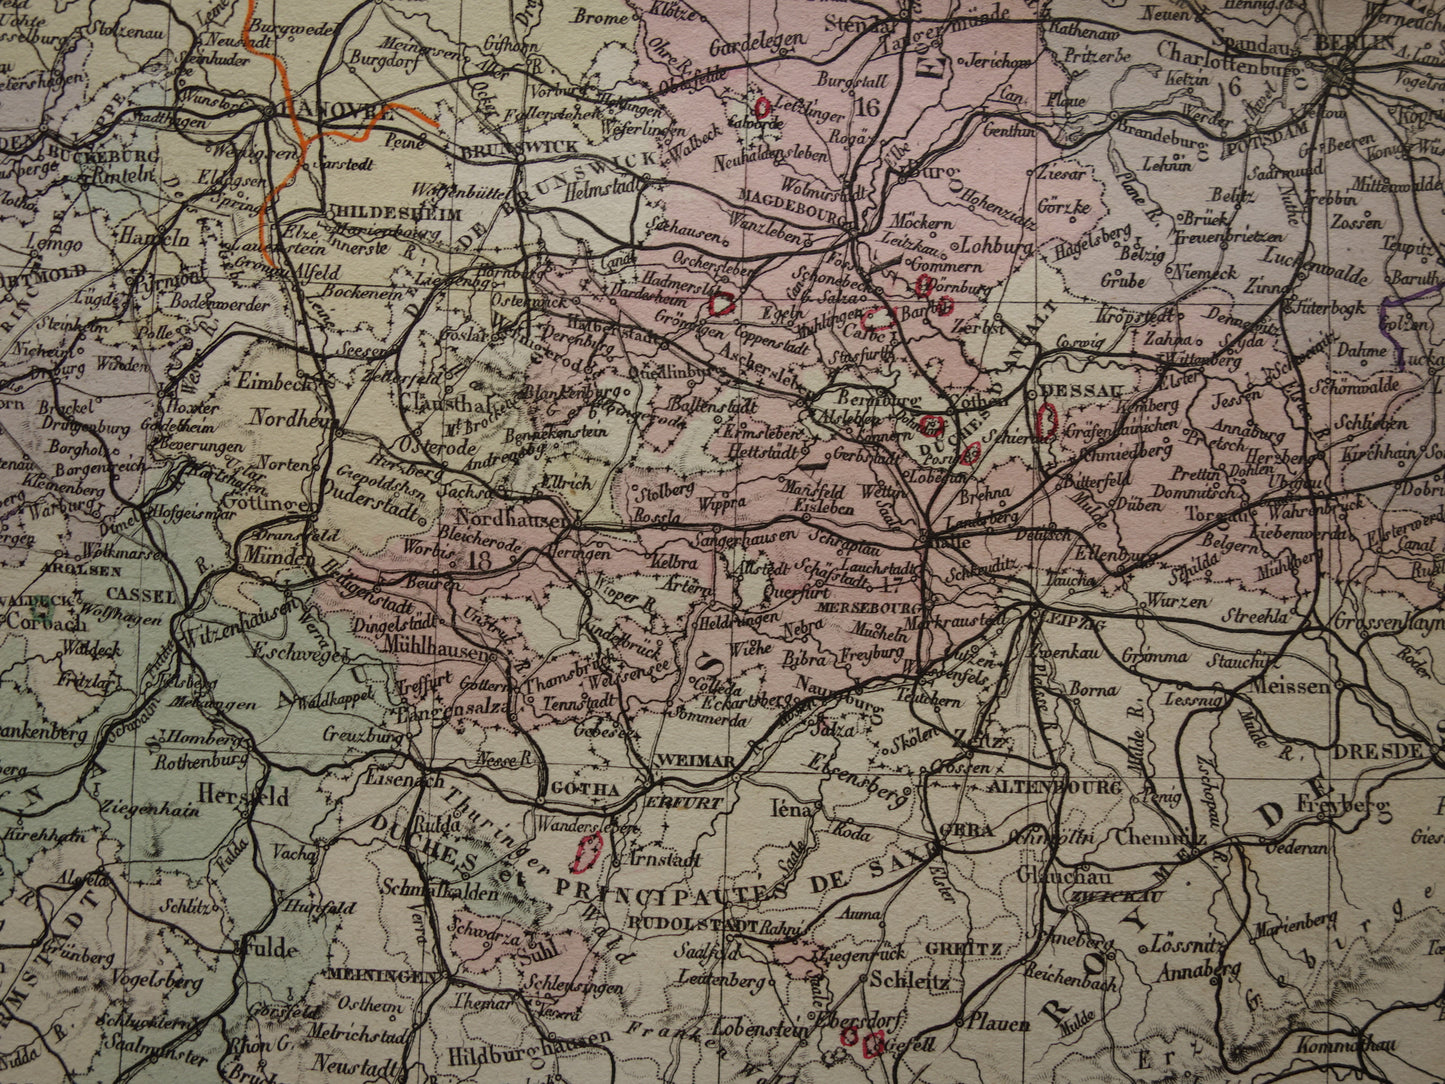 Pruissen grote oude kaart van Duitsland uit 1876 originele antieke handgekleurde landkaart poster